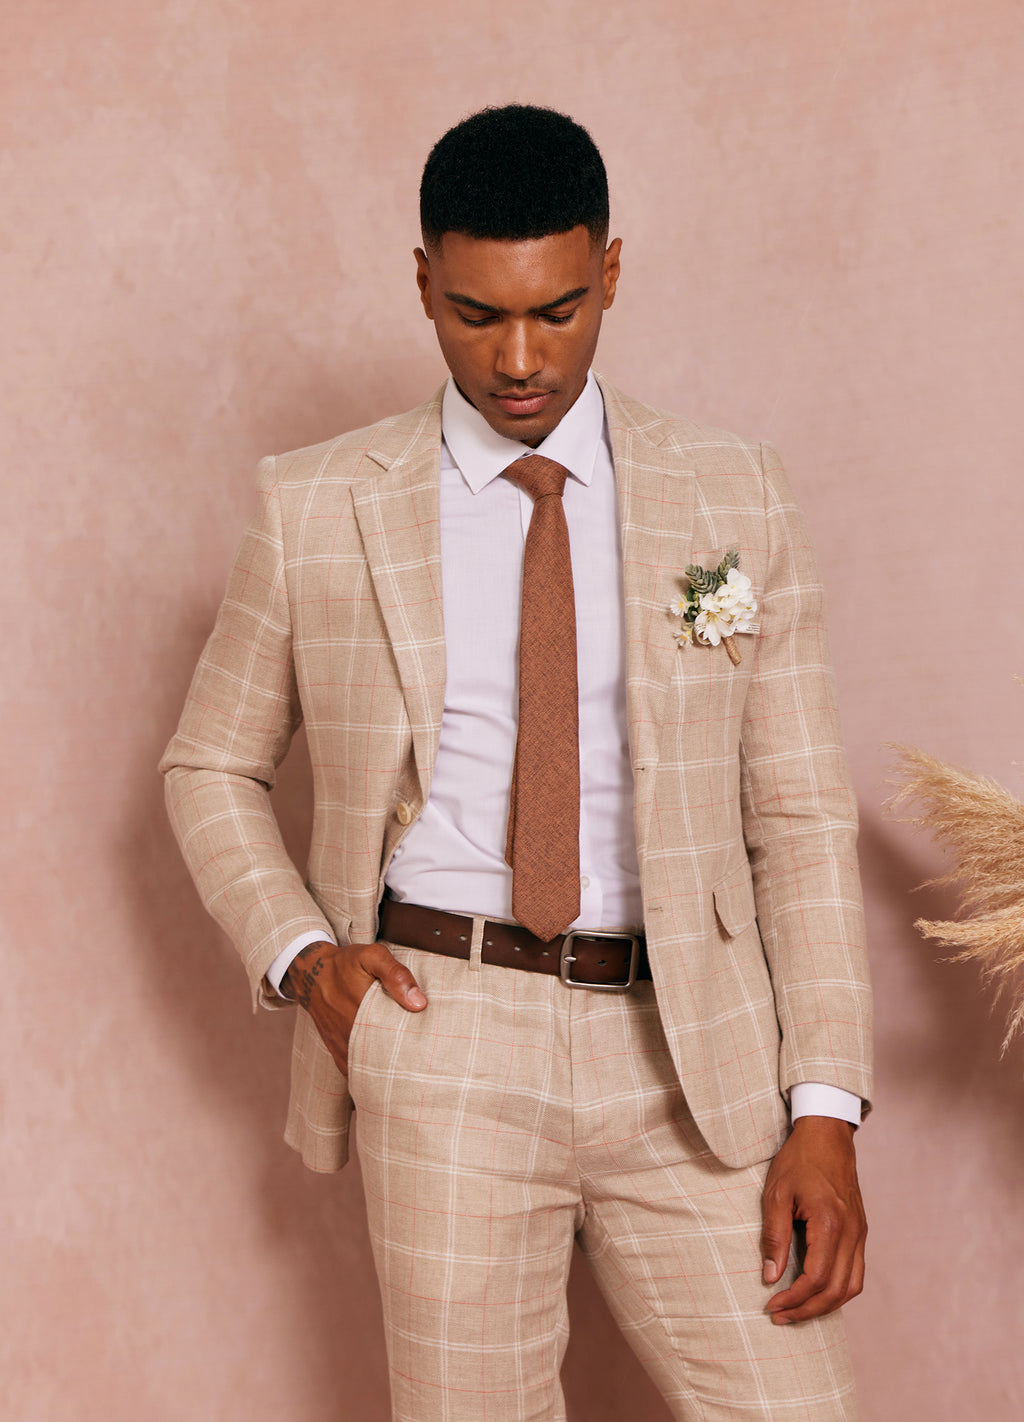 1PA1 Men's Linen Blend Suit Jacket Two Button Business Wedding Slim Fit  Blazer,Mint Green,M 